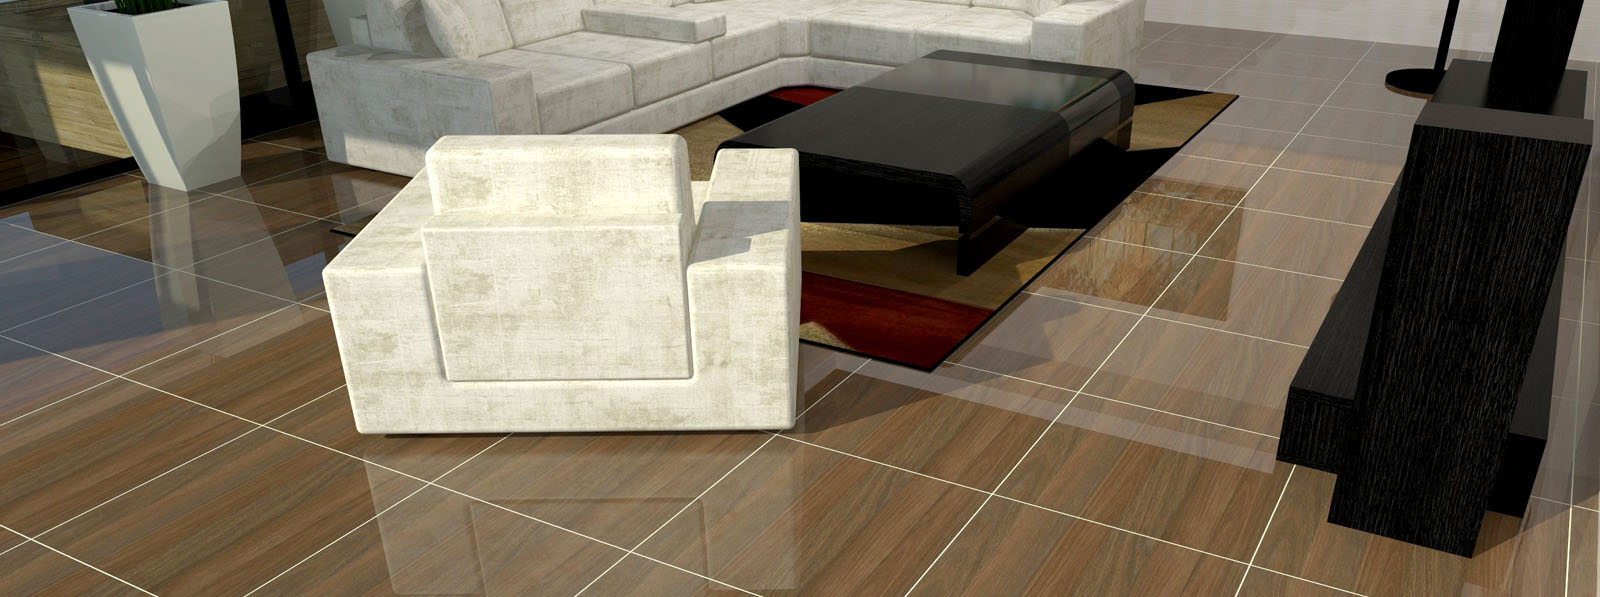 Mariwasa Siam Ceramics Inc Full Hd, Floor Tiles Design For Small Living Room Philippines